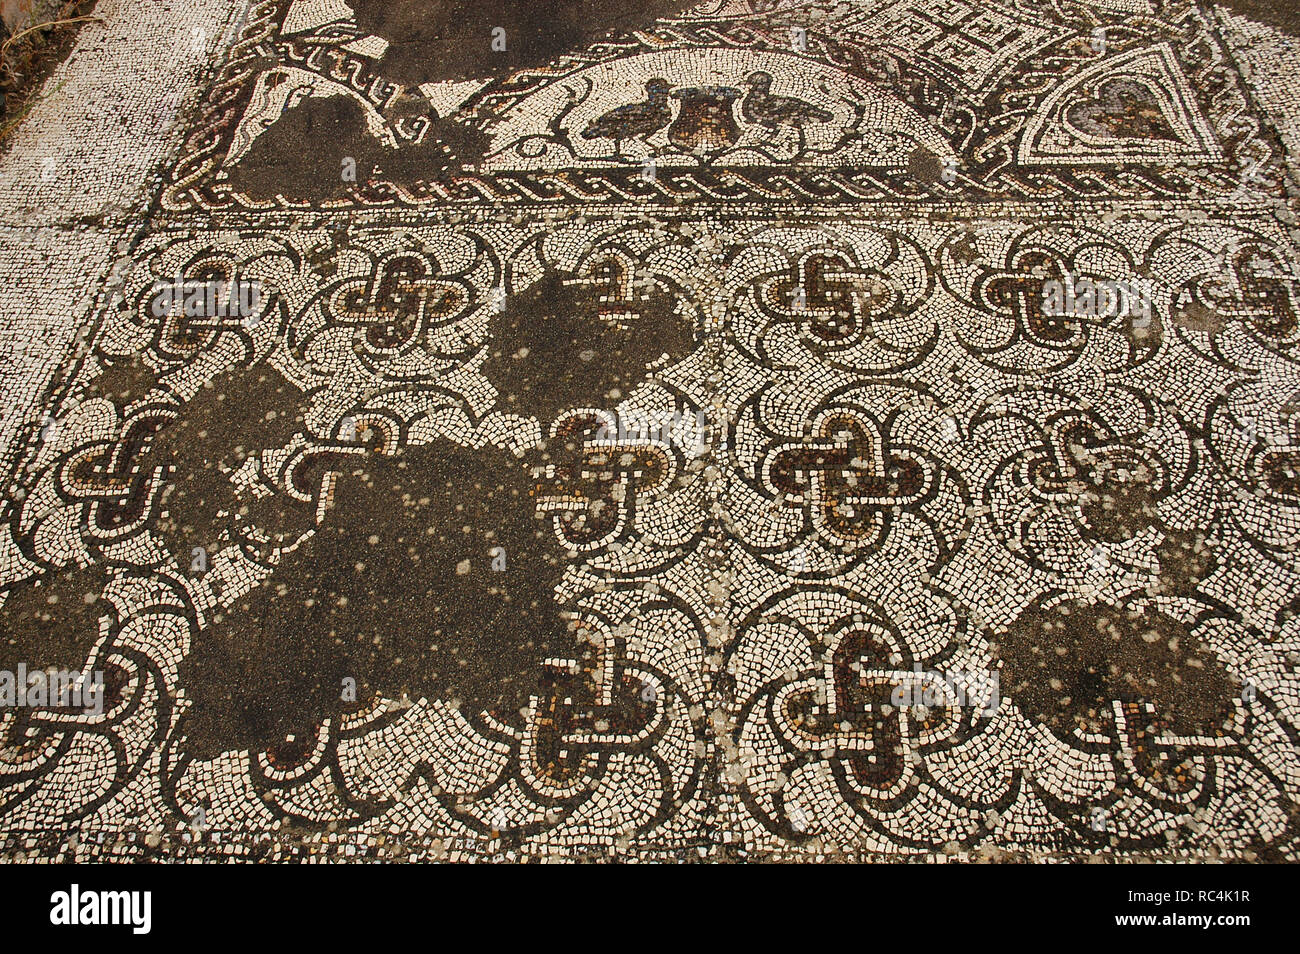 Villa romana di Pisoes. Pavimento a mosaico raffigurante geometrici e motivi naturalistici. Il Portogallo. L'Alentejo. Beja. Foto Stock